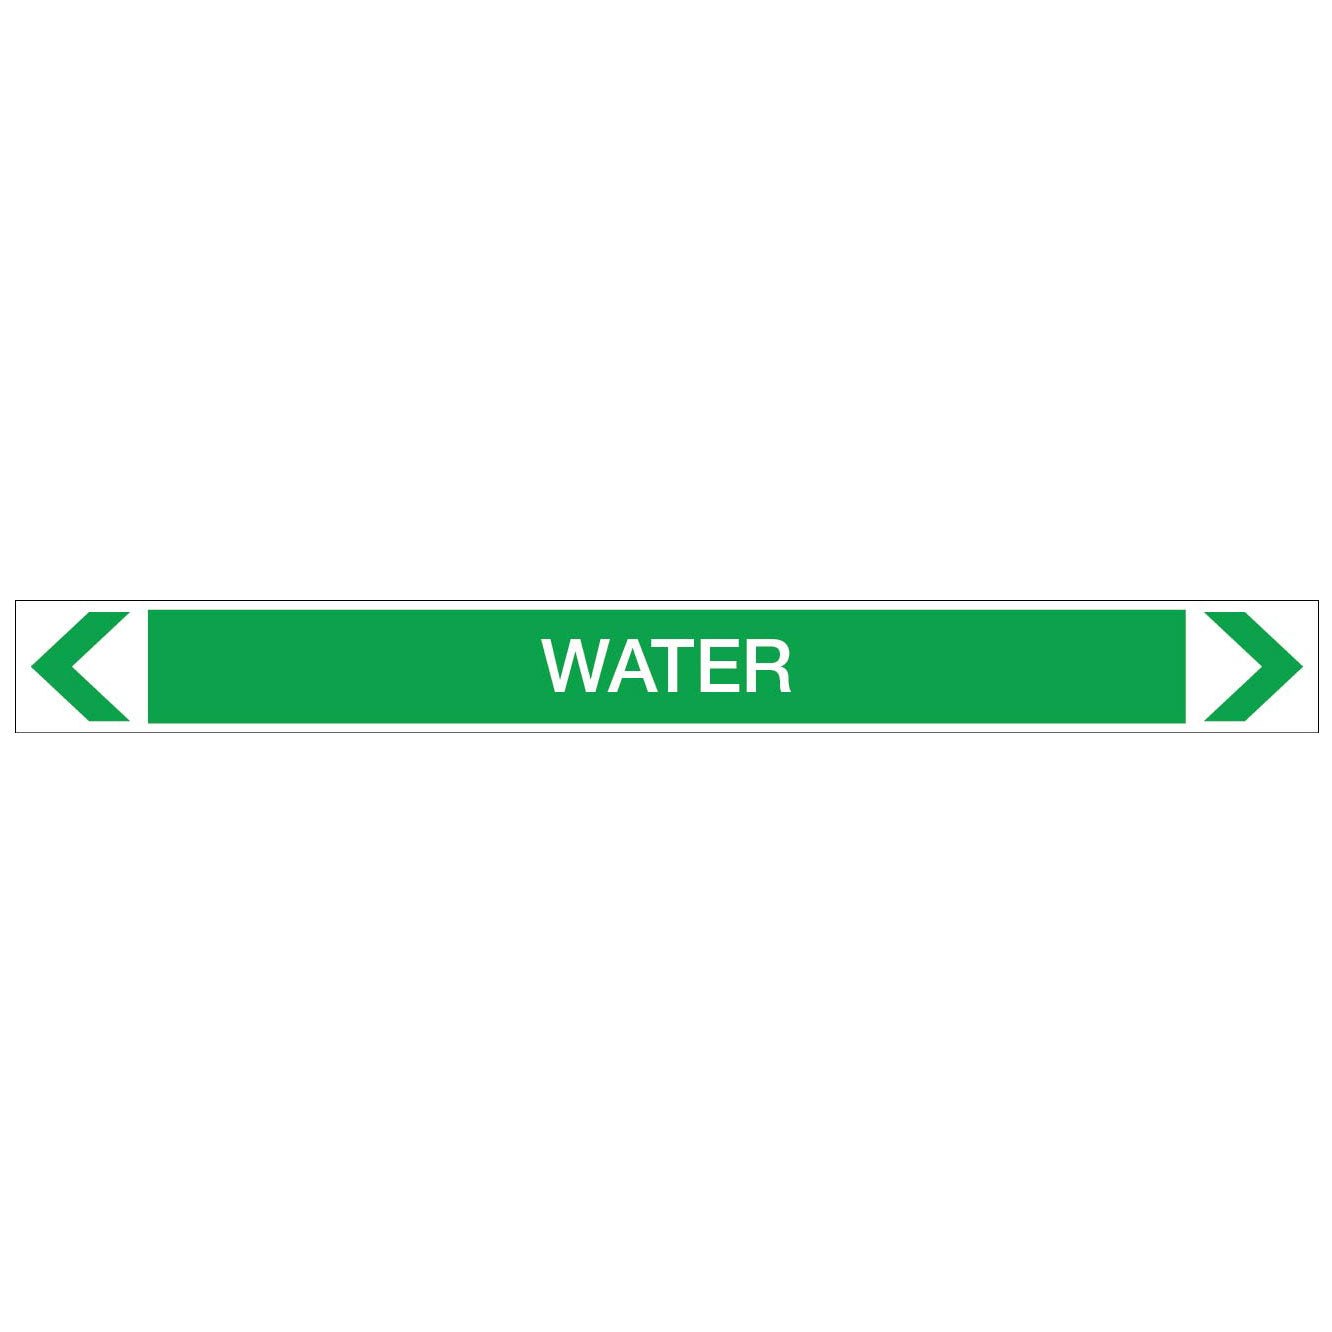 Water - Water - Pipe Marker Sticker